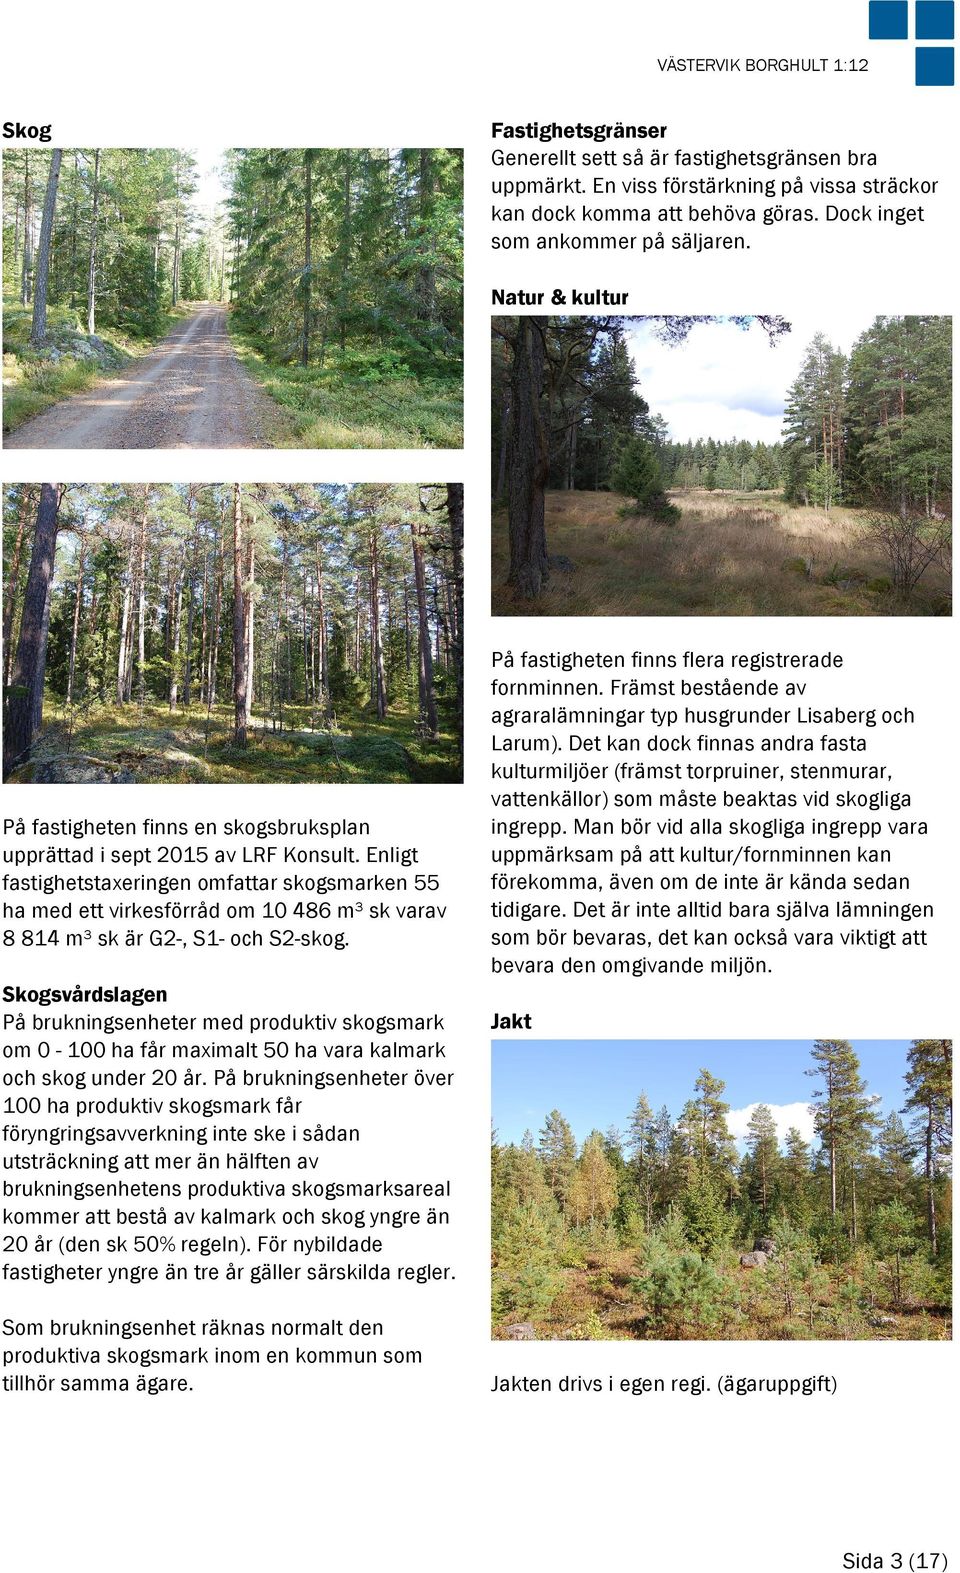 Enligt fastighetstaxeringen omfattar skogsmarken 55 ha med ett virkesförråd om 10 486 m³ sk varav 8 814 m³ sk är G2-, S1- och S2-skog.